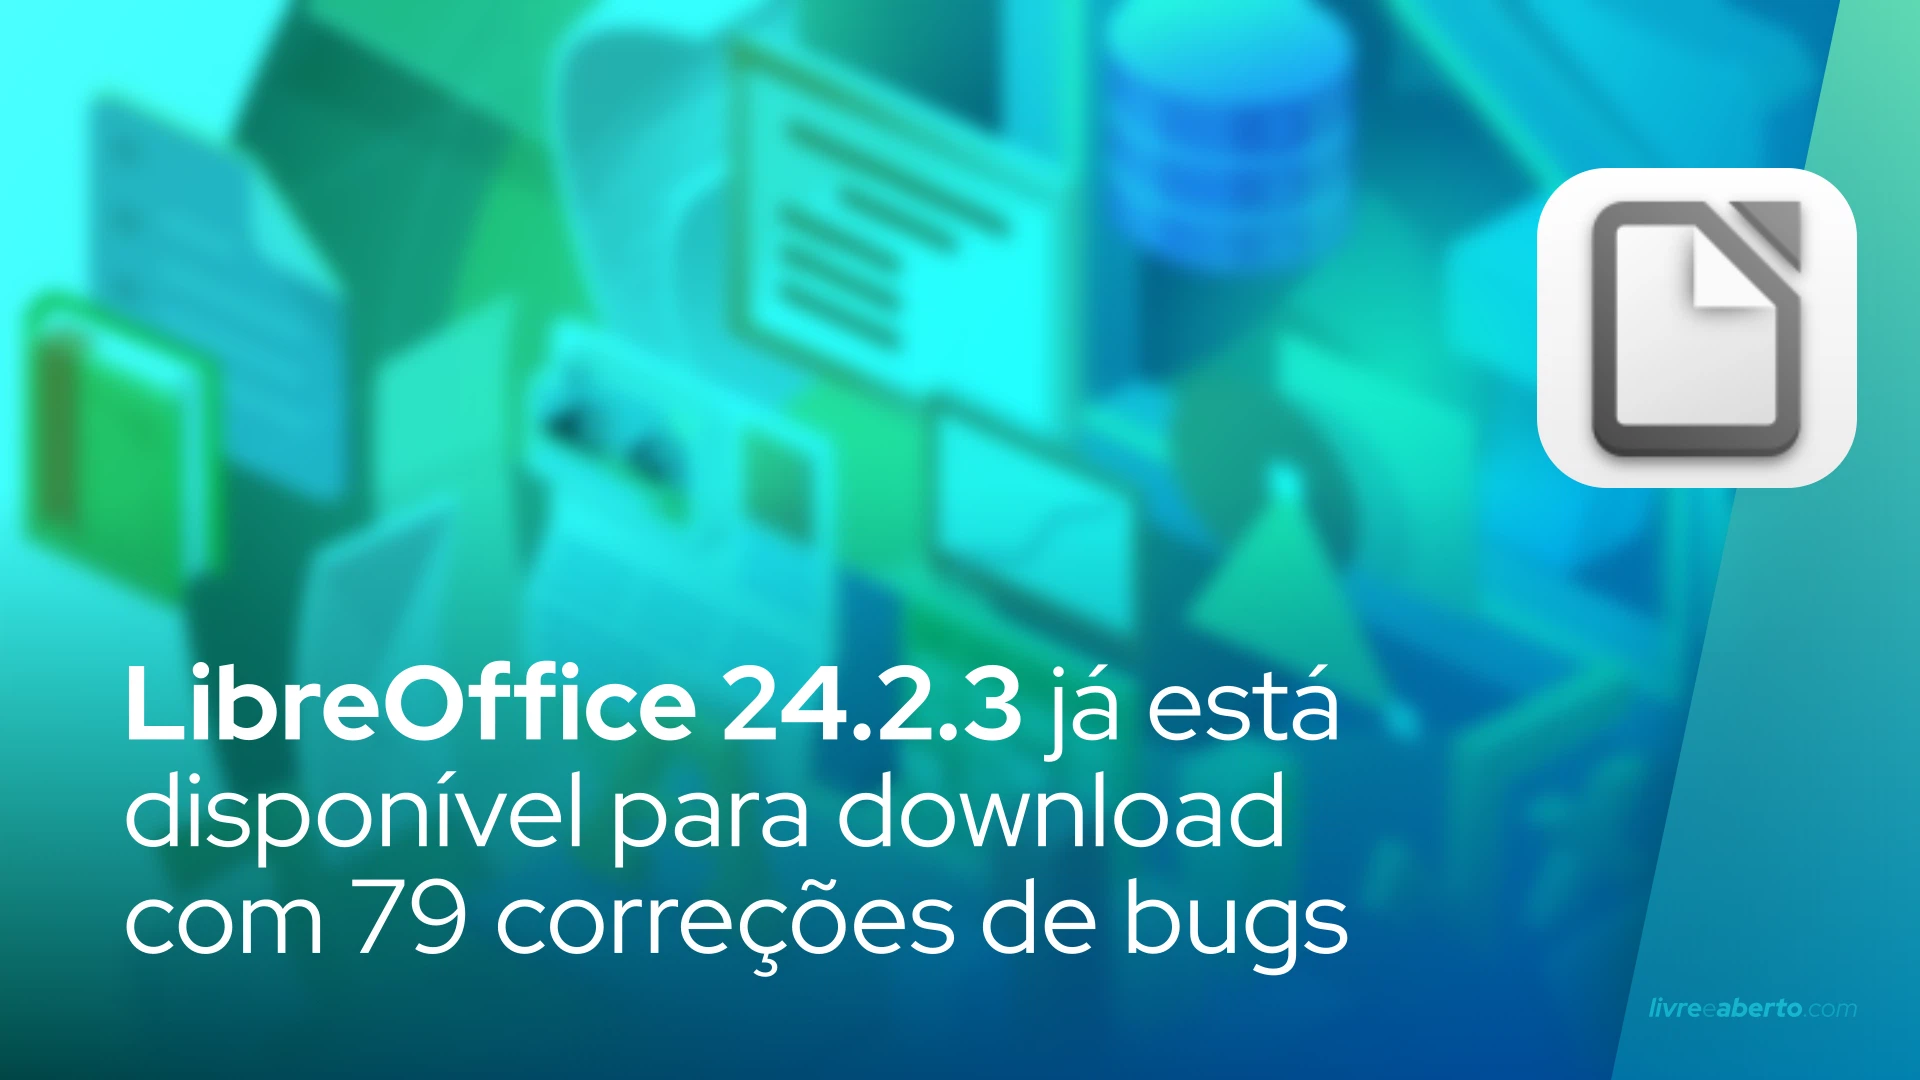 LibreOffice 24.2.3 já está disponível para download com 79 correções de bugs